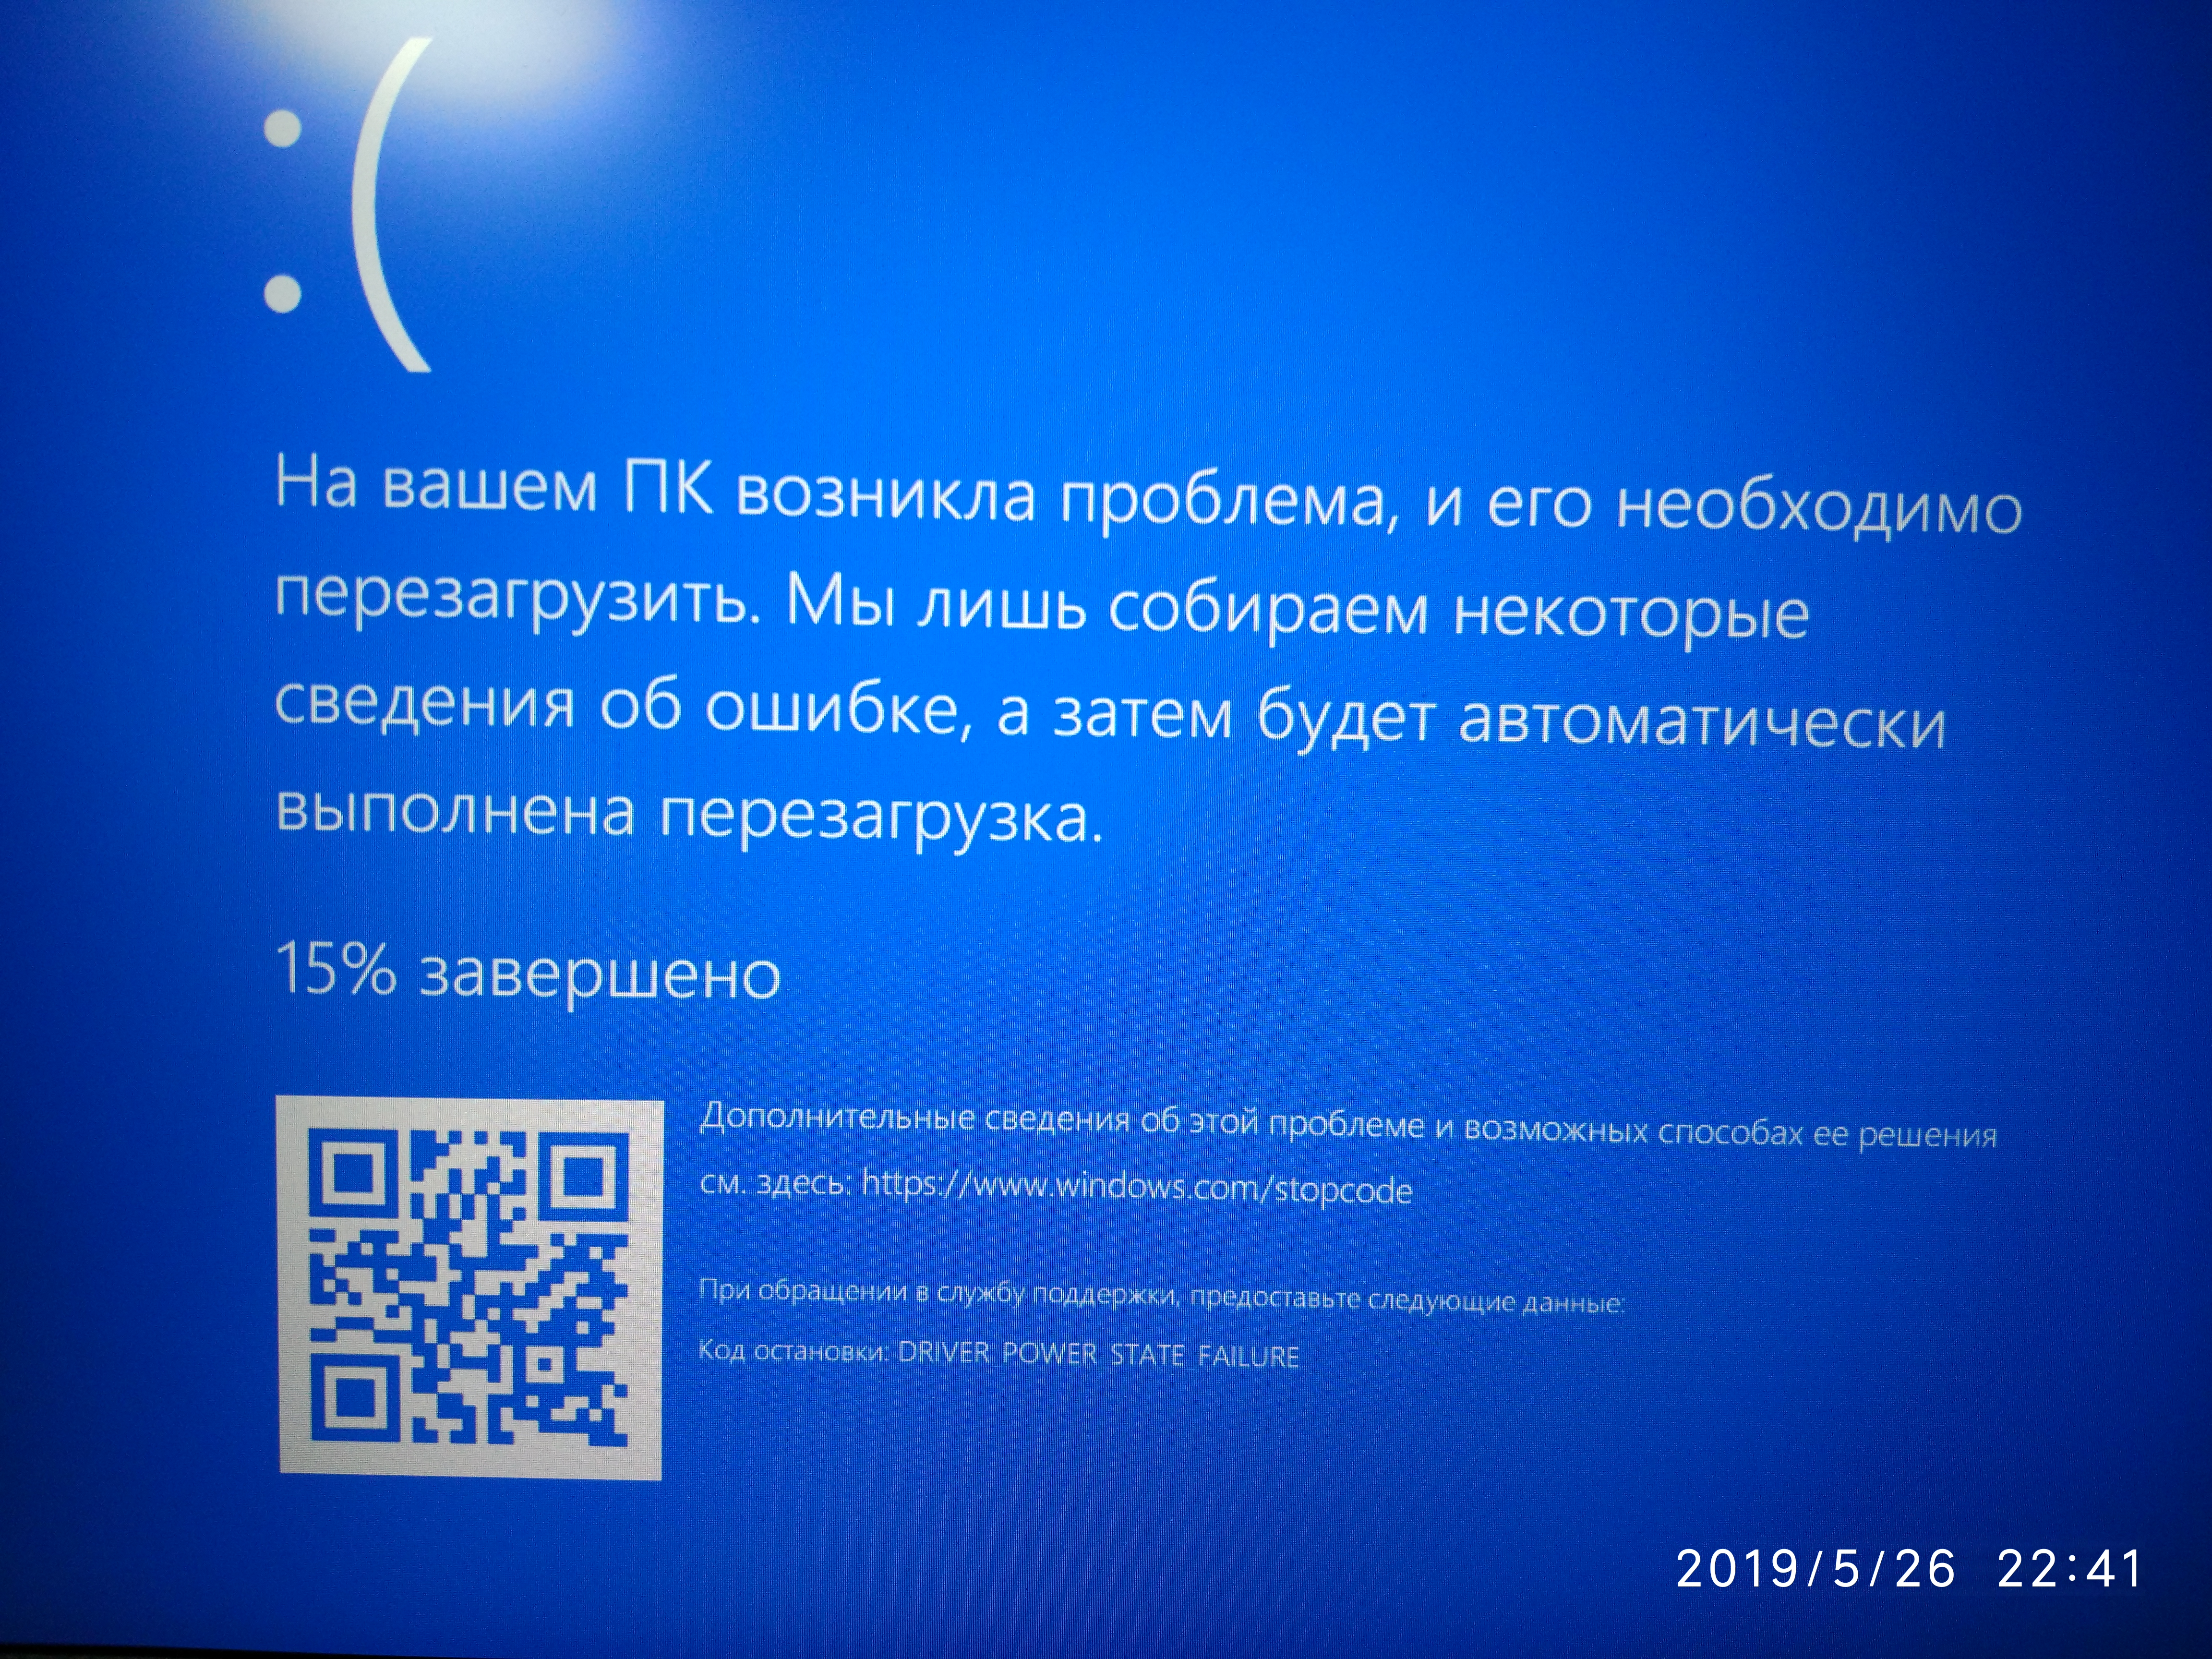 Флешка синий экран 10. На вашем ПК возникла проблема и его необходимо перезагрузить. Синий экран с английскими буквами. BSOD(объяснить на примере структурной схемы архитектуры ОС Windows).